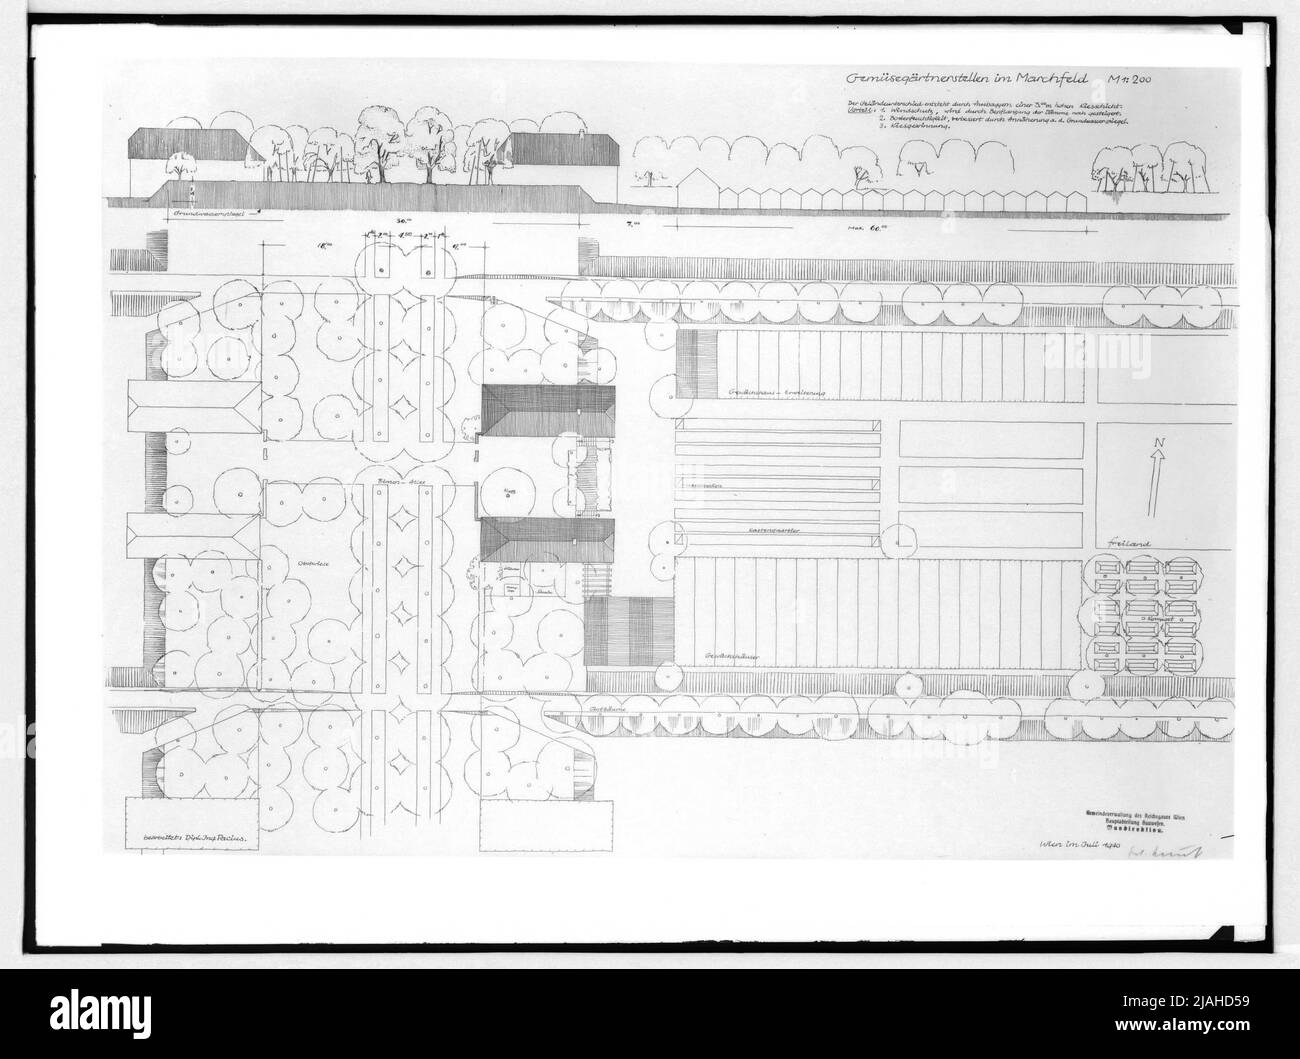 Corte y plano de planta de los puestos de horticultura previstos en el Marchfeld (editor: Di Pacius) Foto de stock